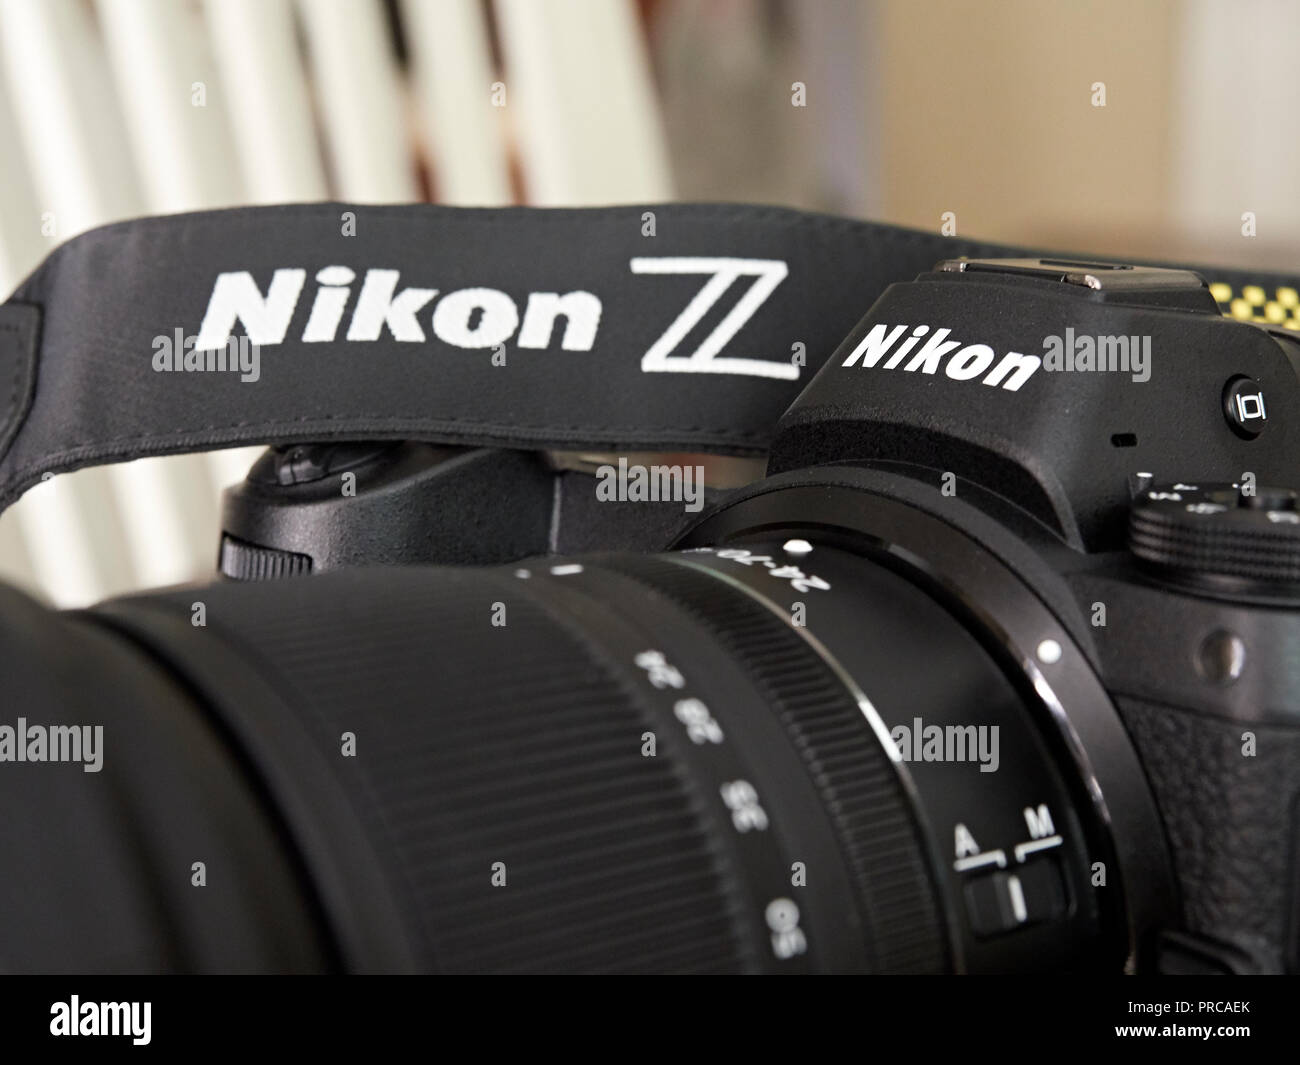 Cerca de la nueva cámara mirrorless Nikon 7 Z utilizado para la fotografía profesional. Foto de stock